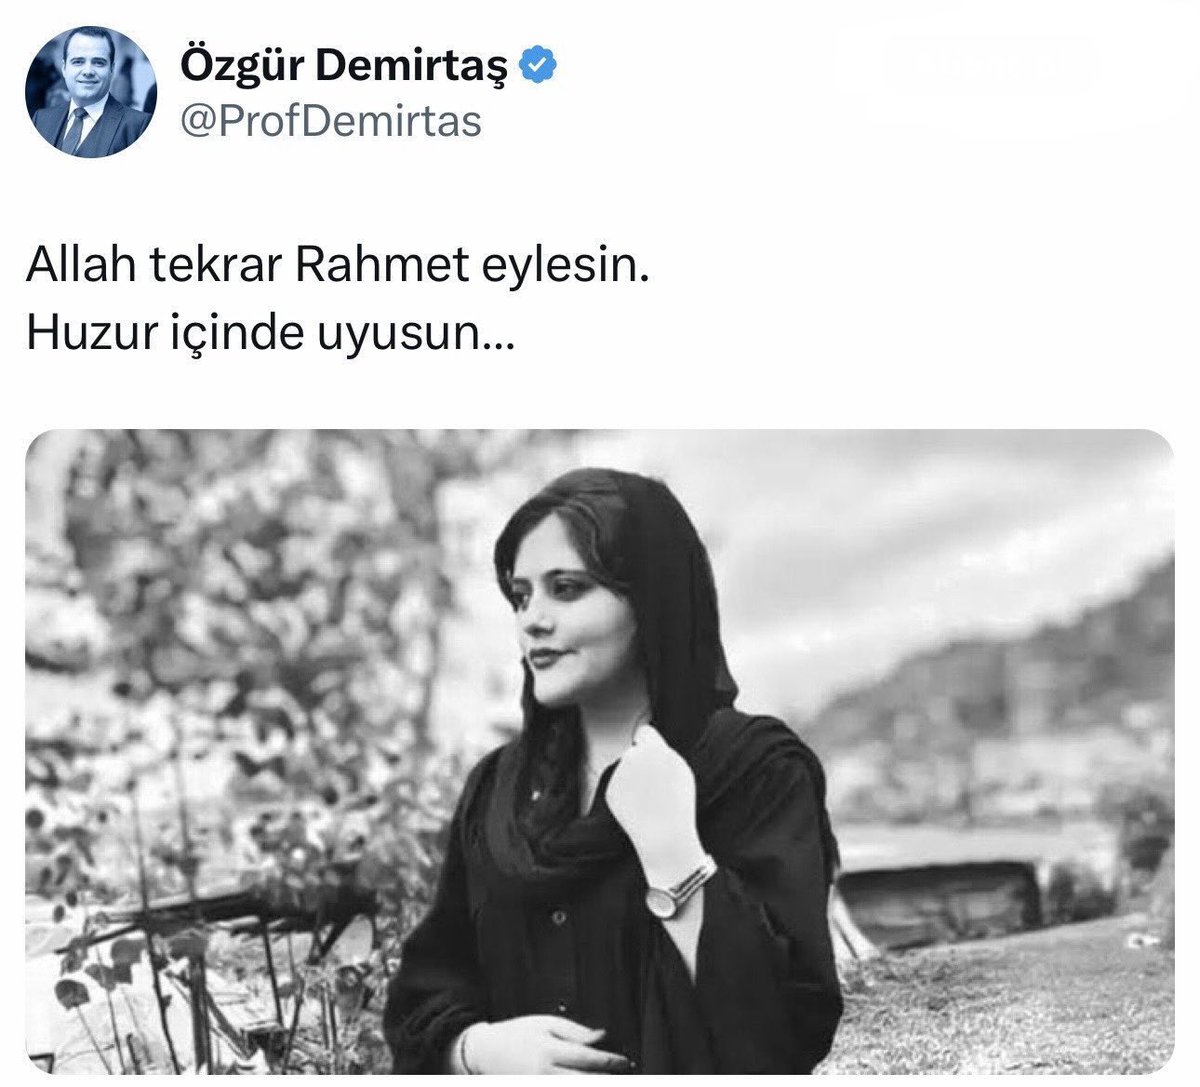 📌 Mahsa Amini unutulmadı… Prof. Dr. Özgür Demirtaş (@ProfDemirtas) İran Cumhurbaşkanı Reisi’nin ölümünün ardından 16 Eylül 2022 tarihinde İran yönetimi tarafından başörtüsüne karşı çıktığı için öldürülen Mahsa Amini’nin fotoğrafını paylaştı.